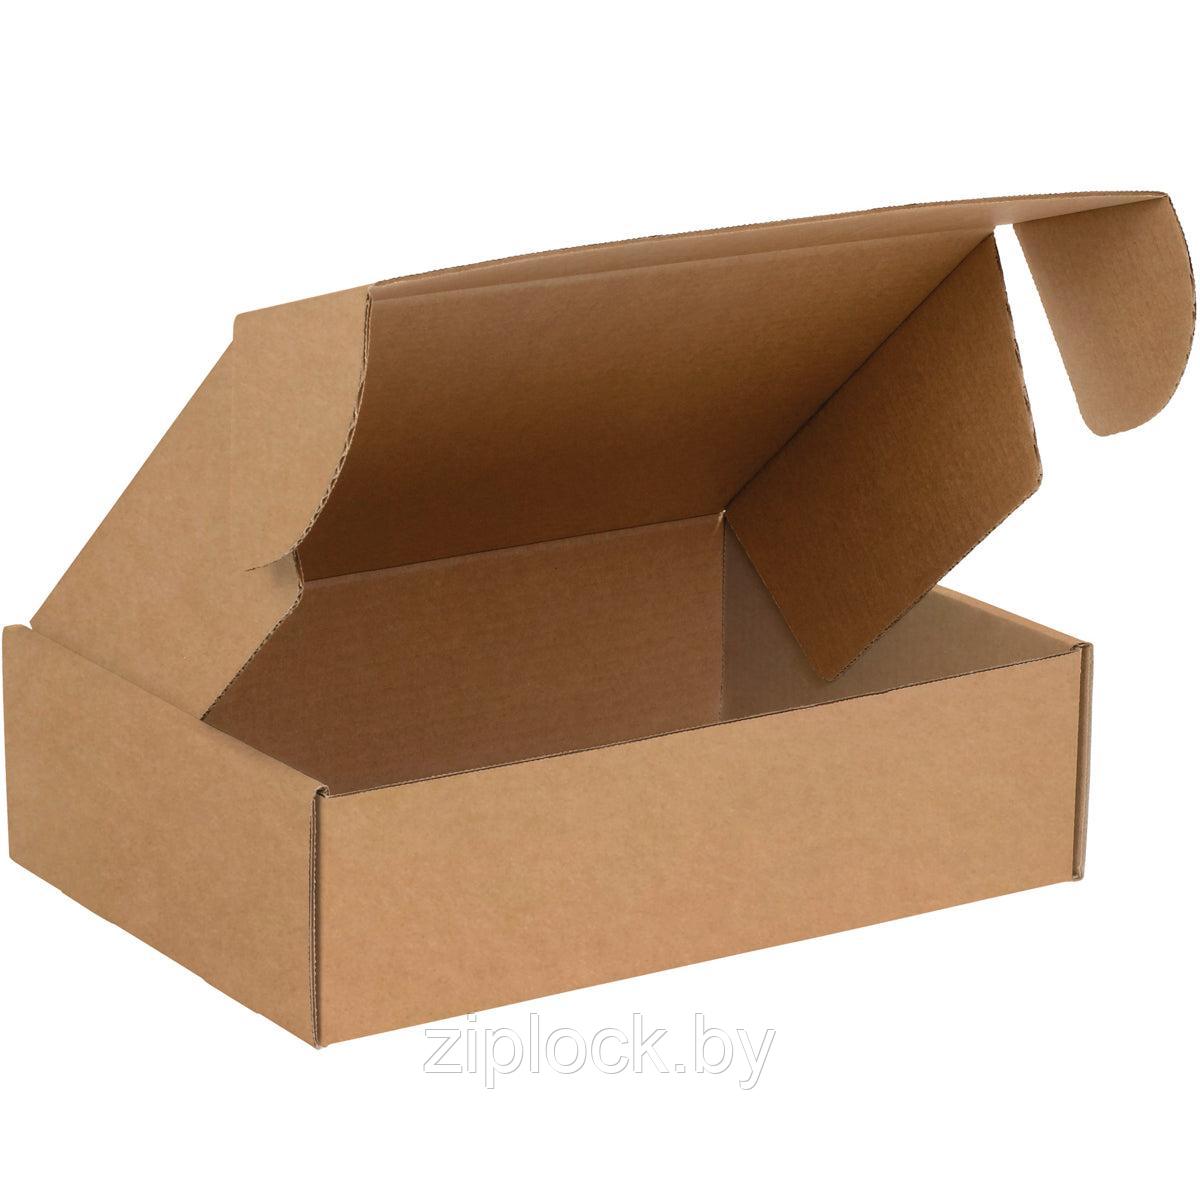 Коробка упаковочная картонная  630*320*340